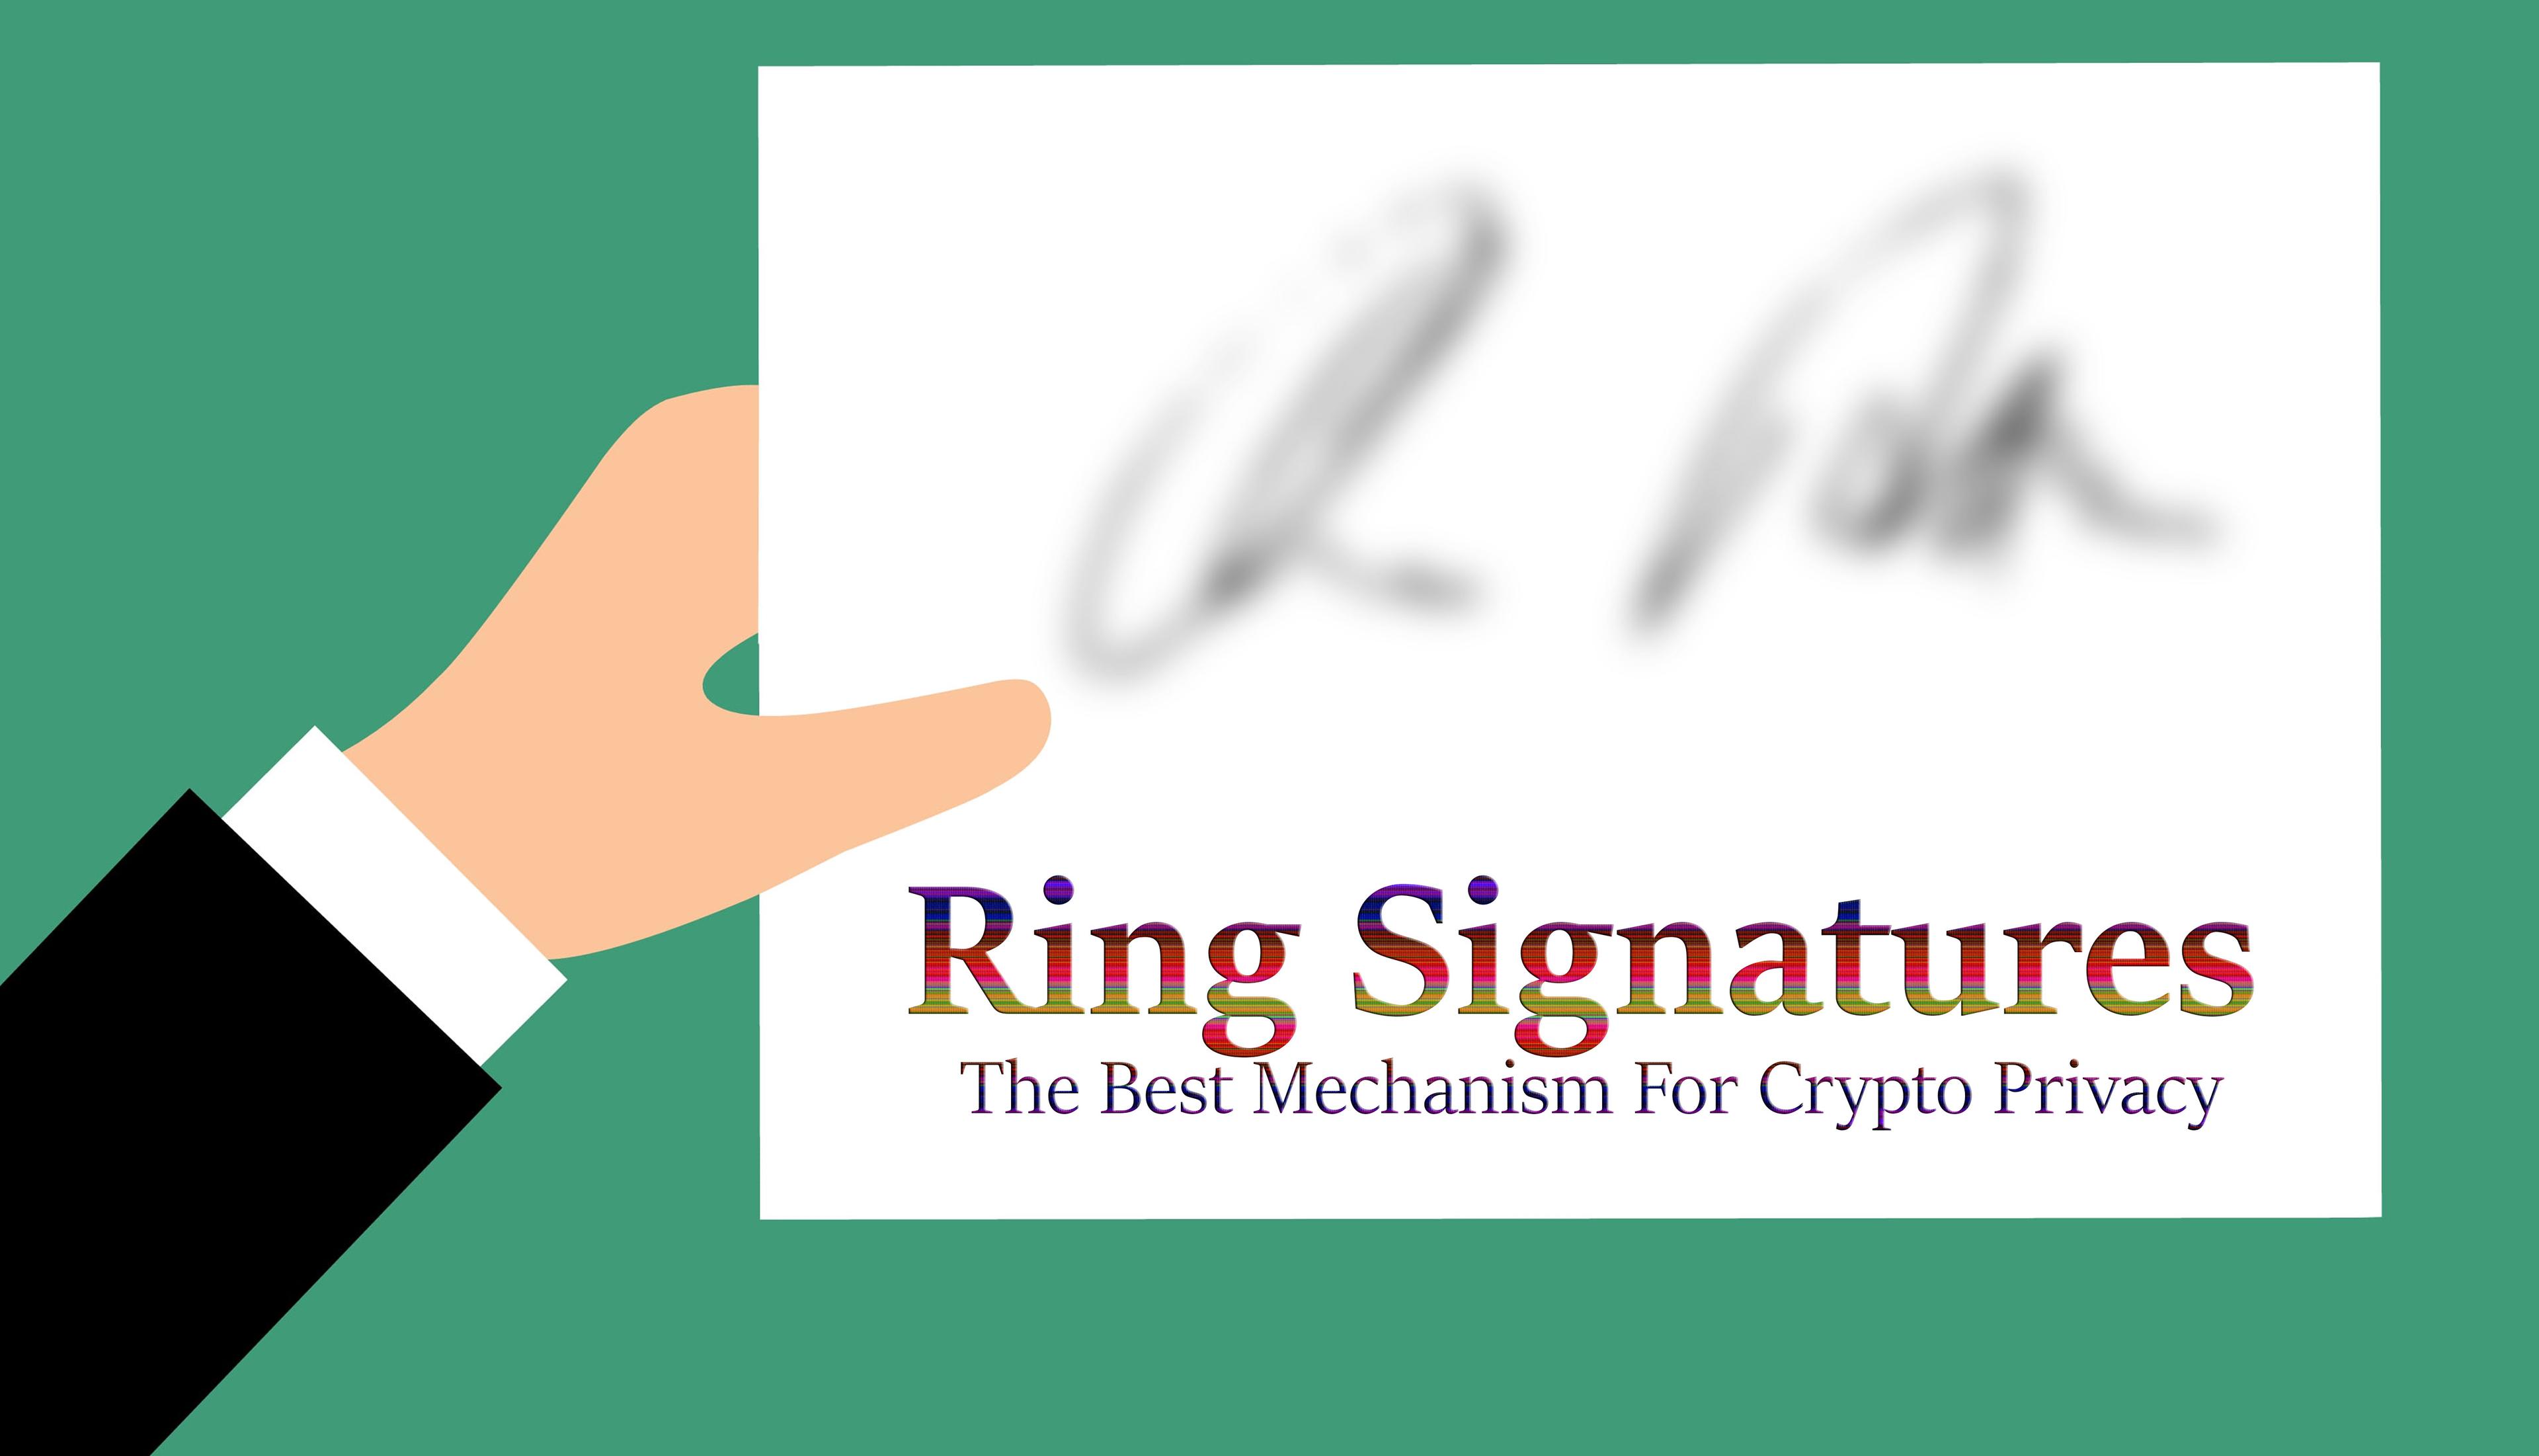 Ring signatures